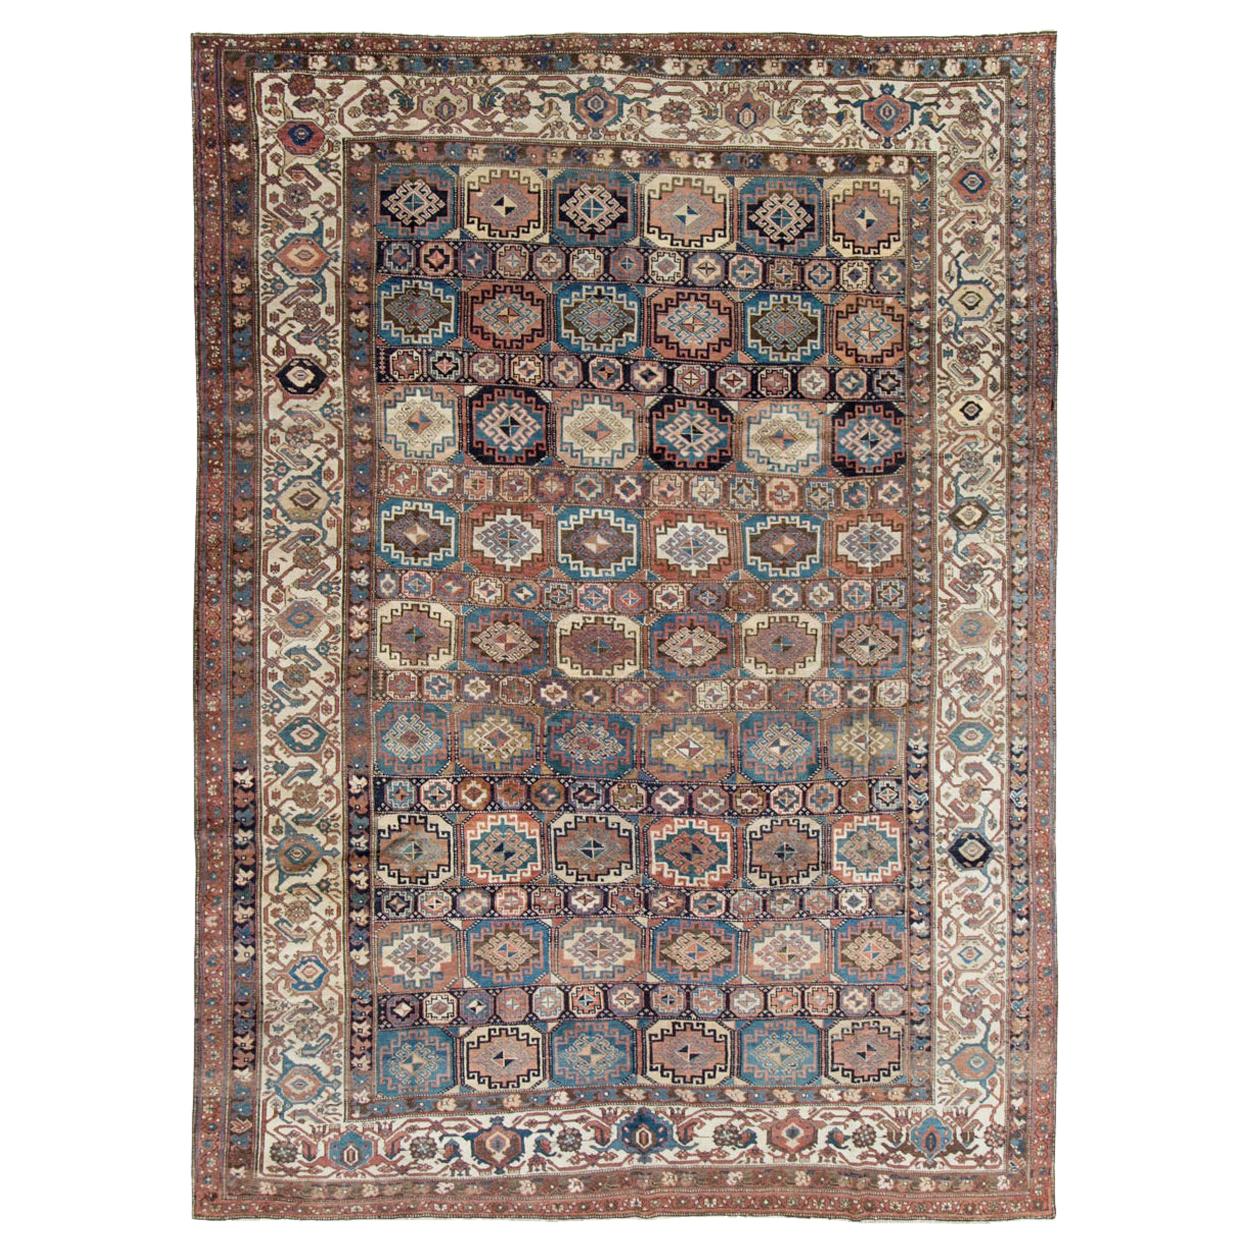 Handgefertigter nordwestlicher persischer Teppich in Zimmergröße aus dem frühen 20. Jahrhundert